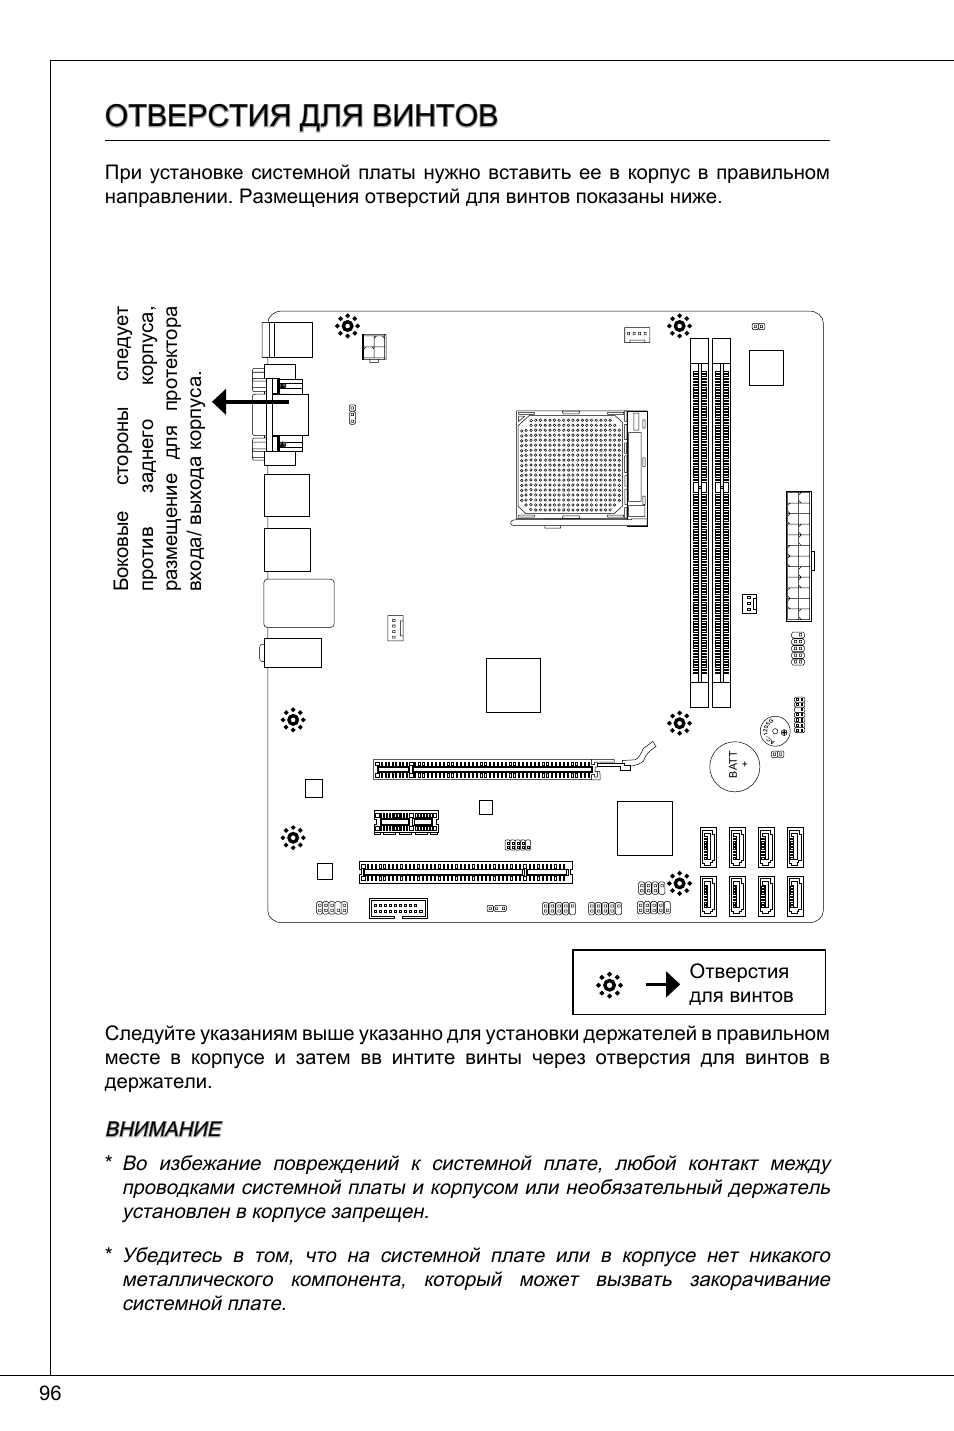 Отверстия для винтов | MSI 760GMA-P34 (FX) User Manual | Page 96 / 172